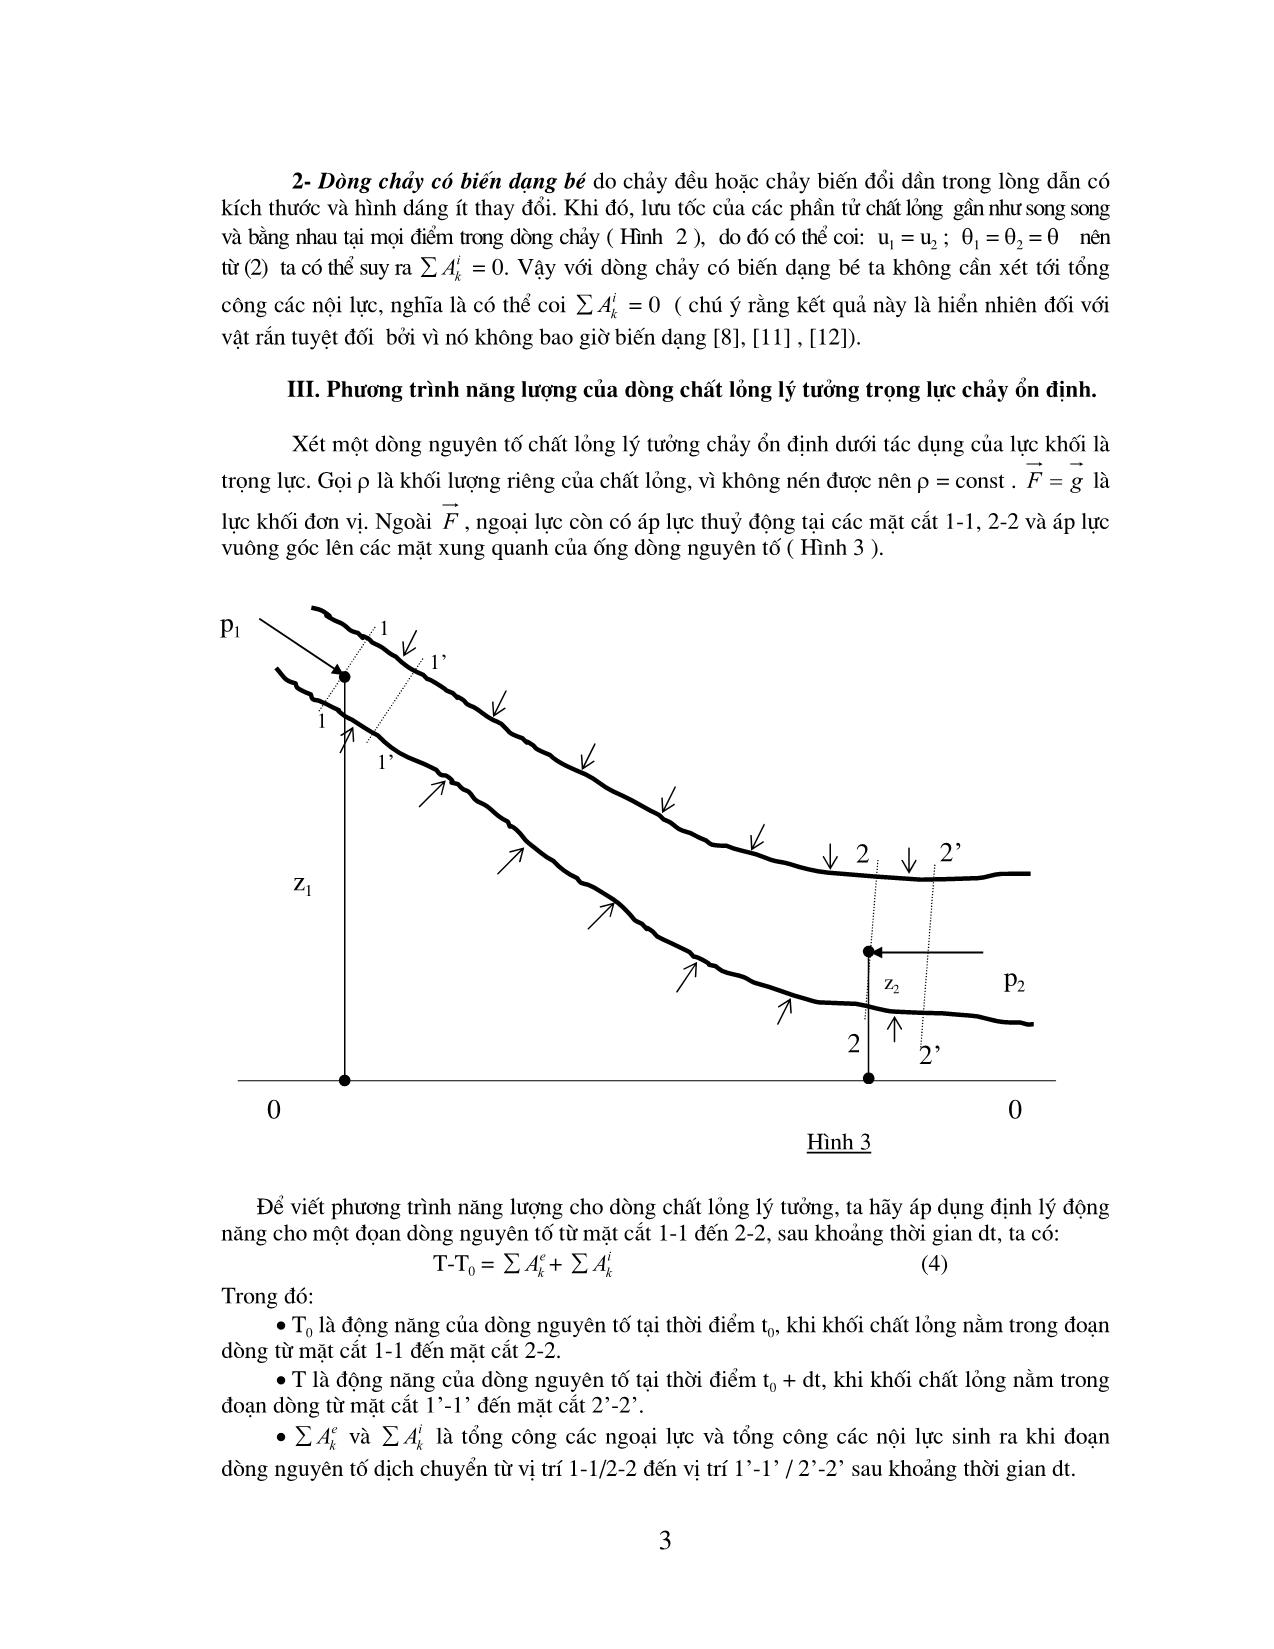 Tác dụng của hệ nội lực lên sự chuyển động của dòng chất lỏng không nhớt trang 3